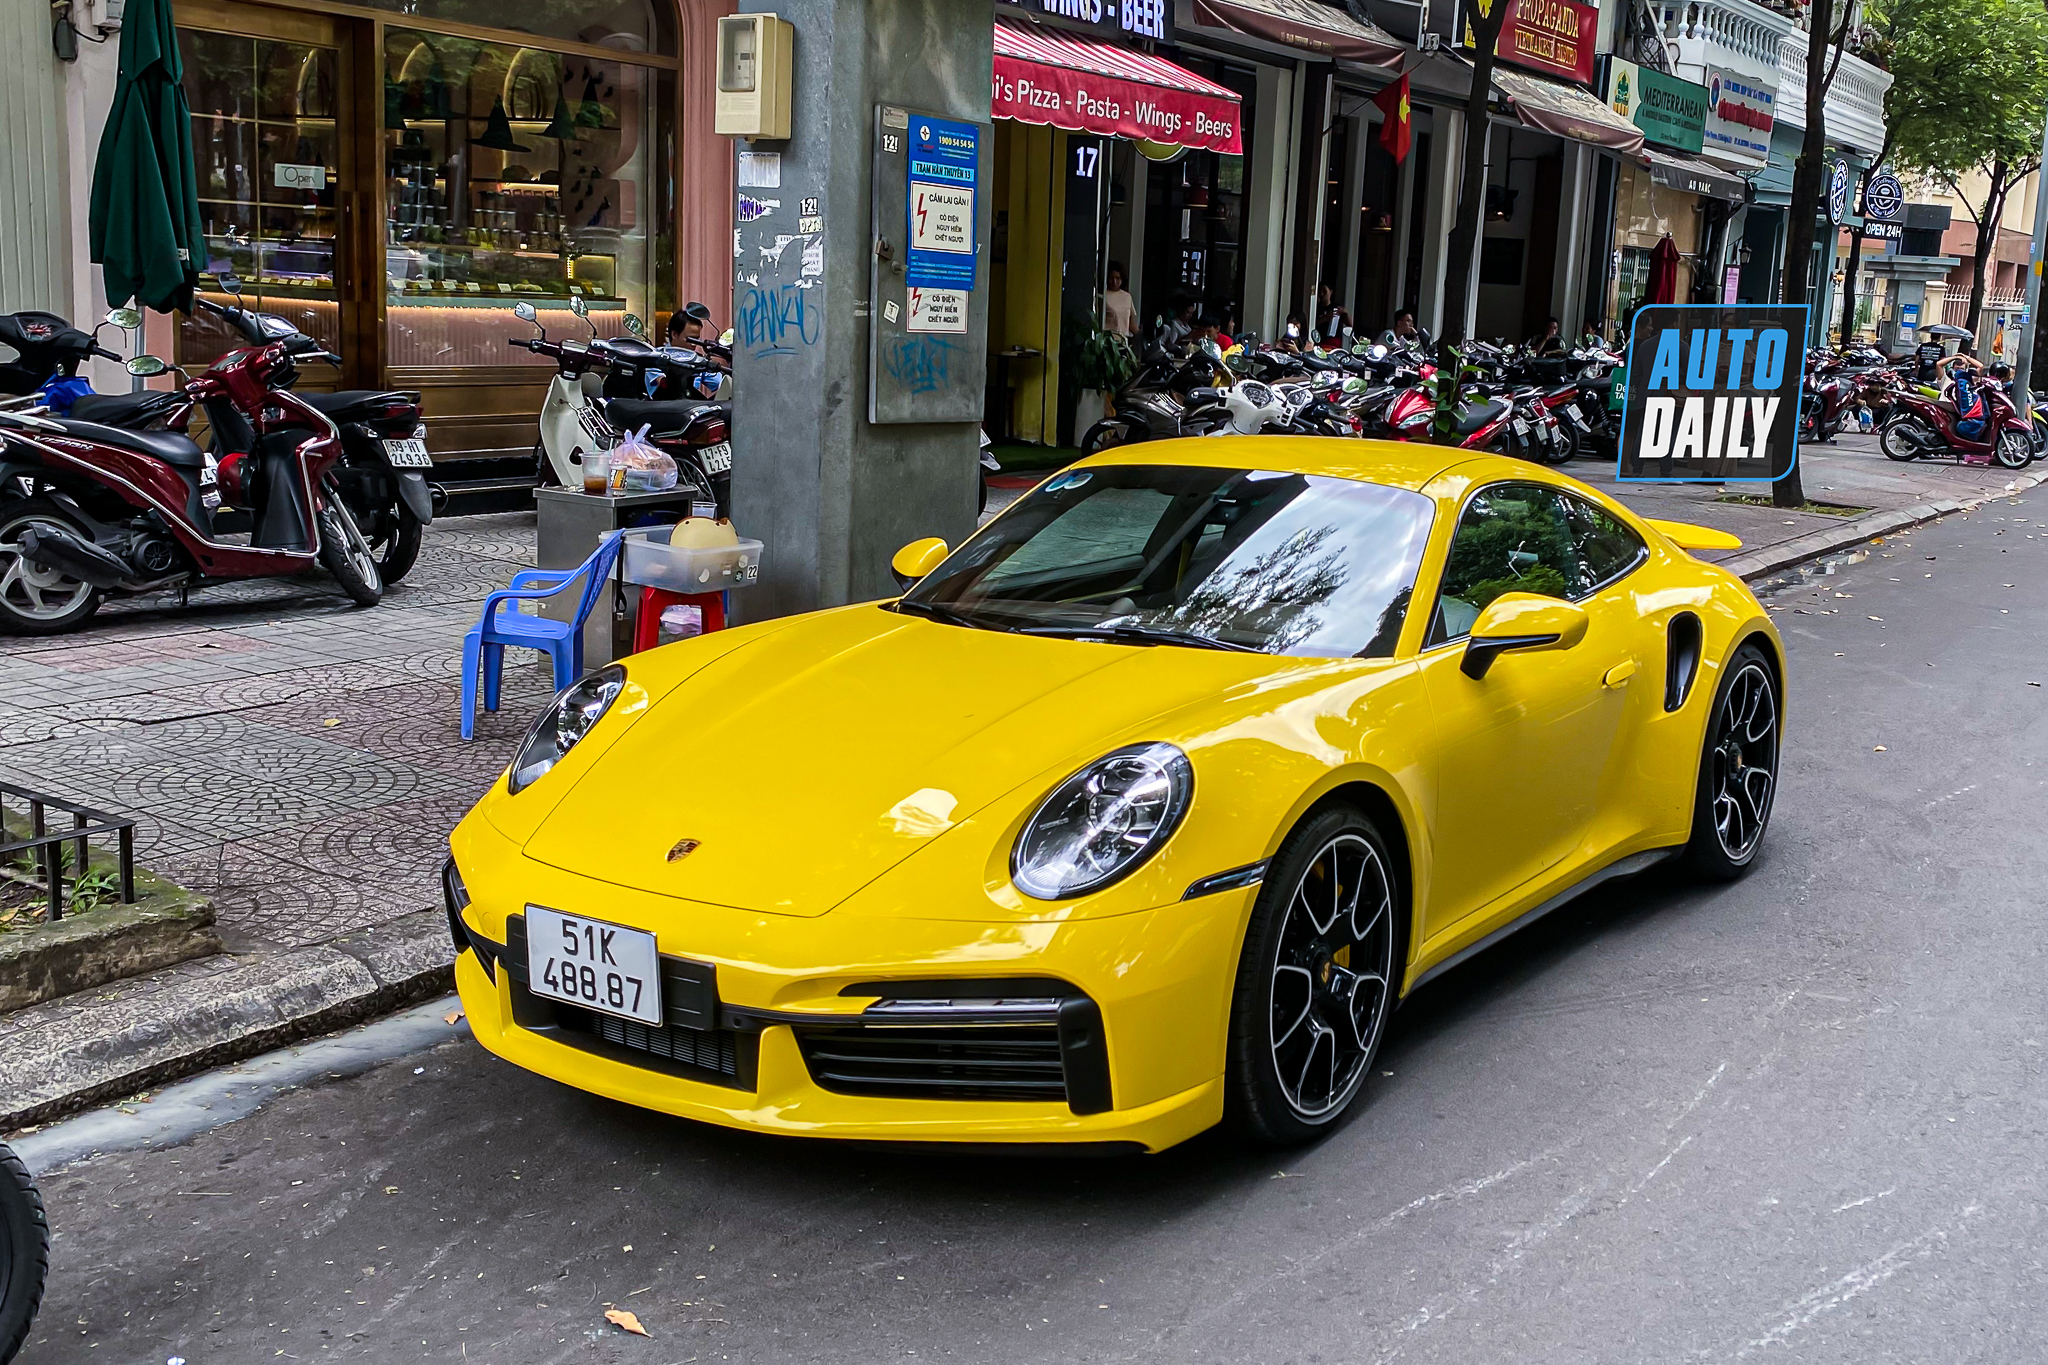 Bắt gặp Porsche 911 Turbo S hơn 17 tỷ màu vàng độc nhất Việt Nam của đại gia Sài Gòn porsche-911-turbo-s-mau-vang-autodaily-11.JPG